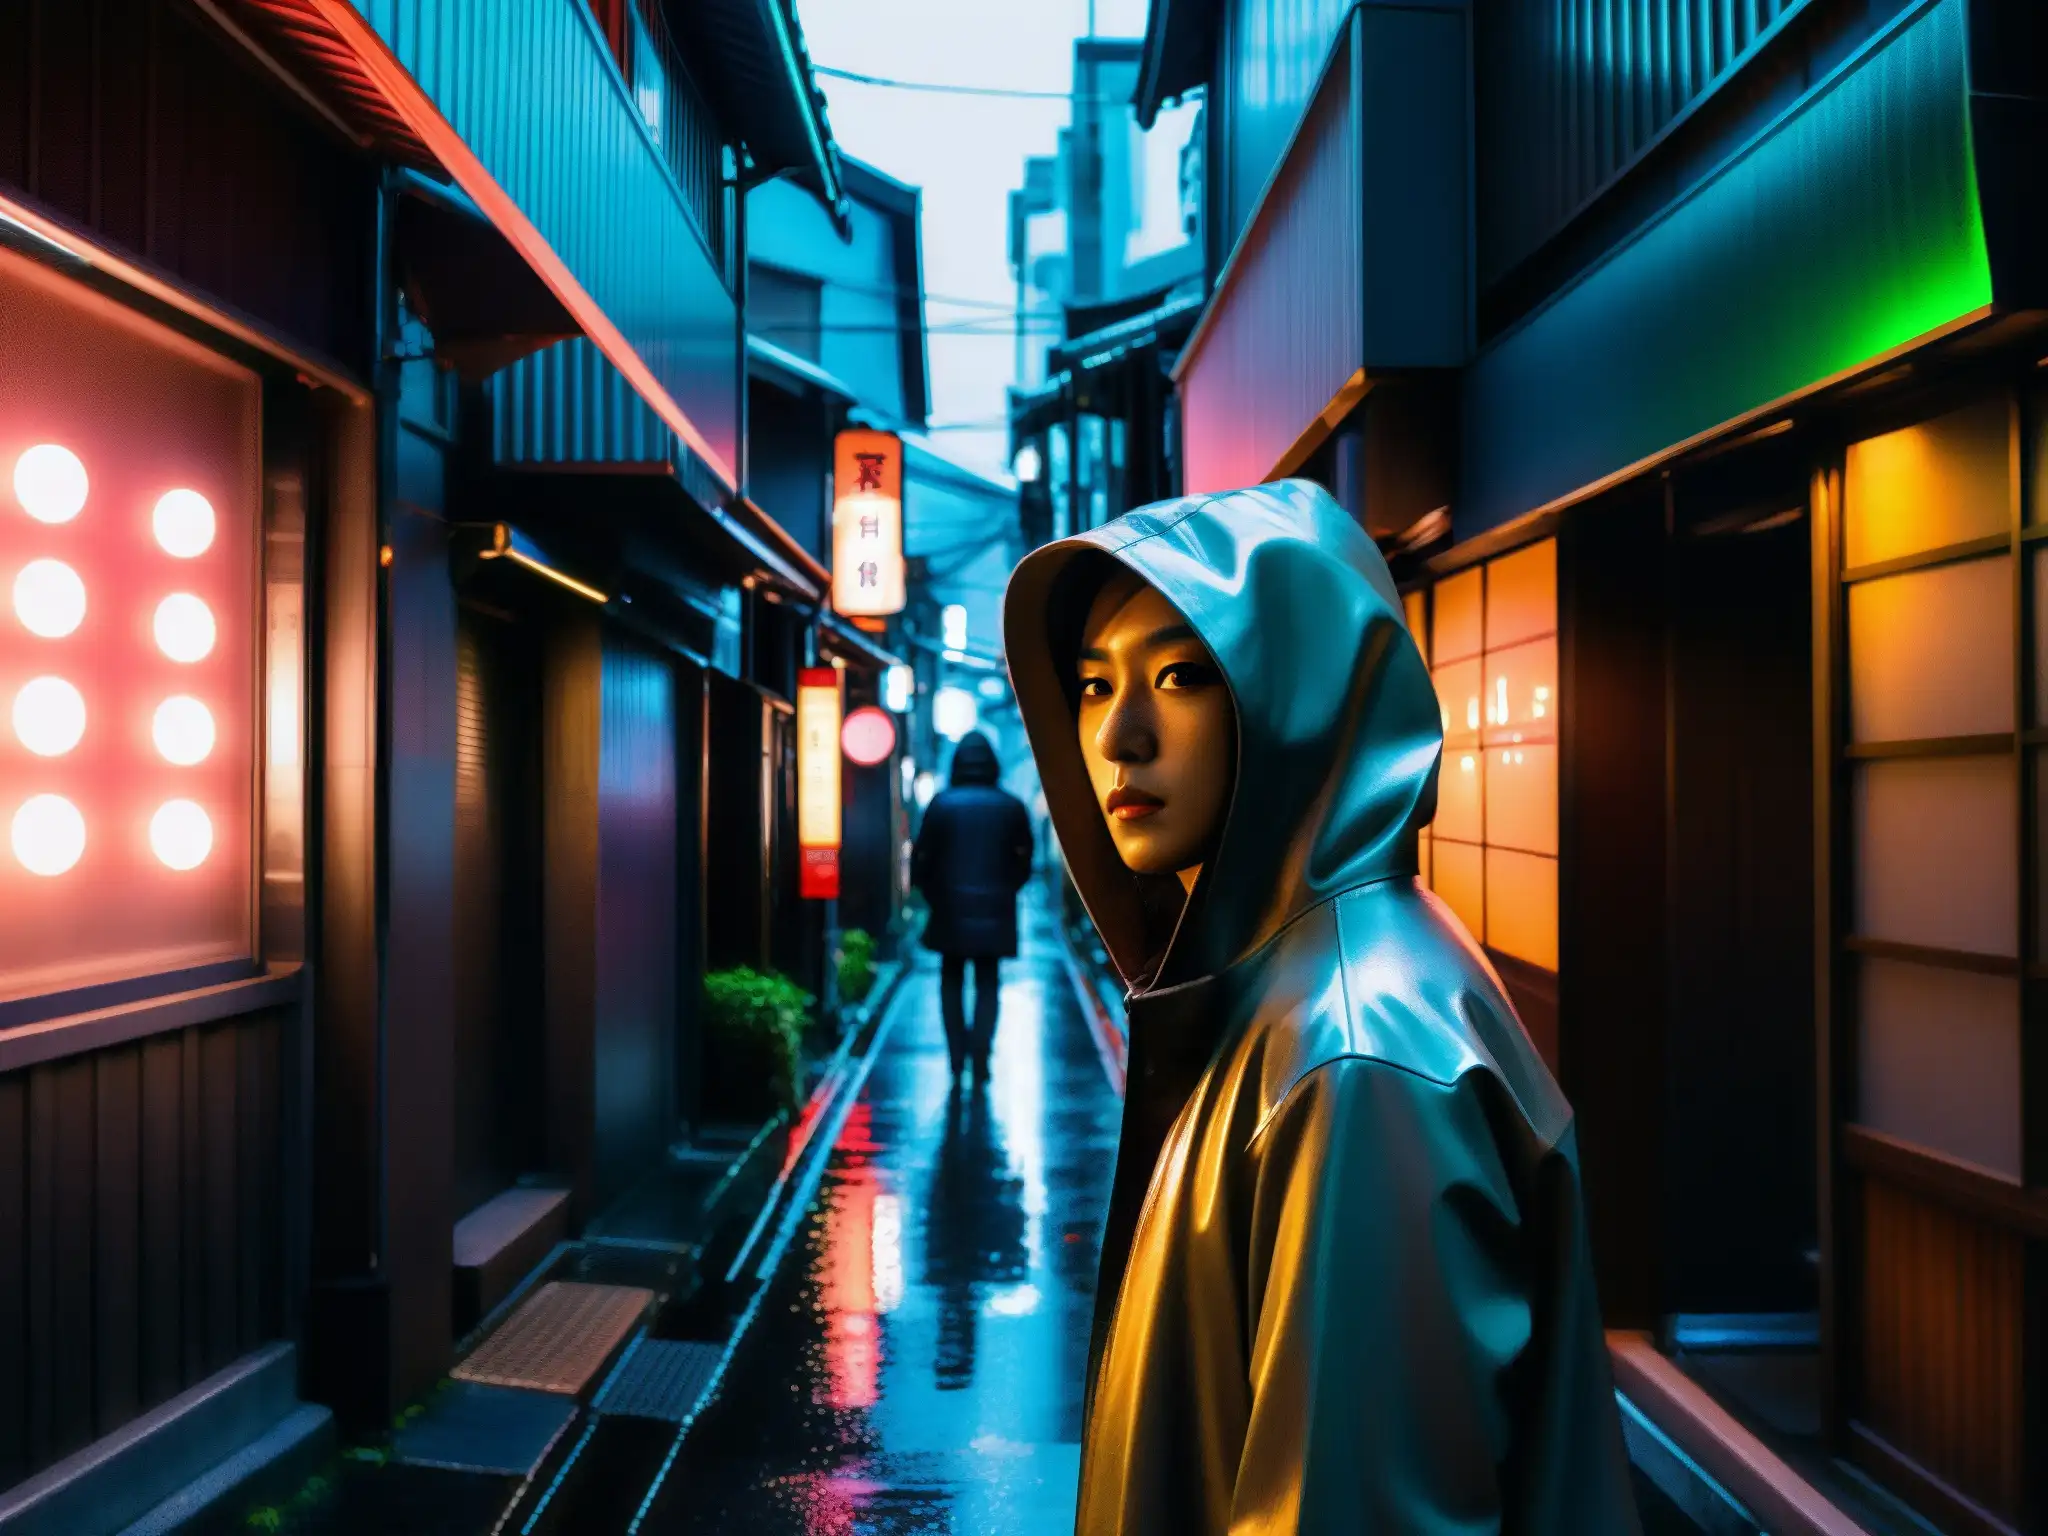 Alley sombría en Tokyo con neón reflejado en el pavimento mojado